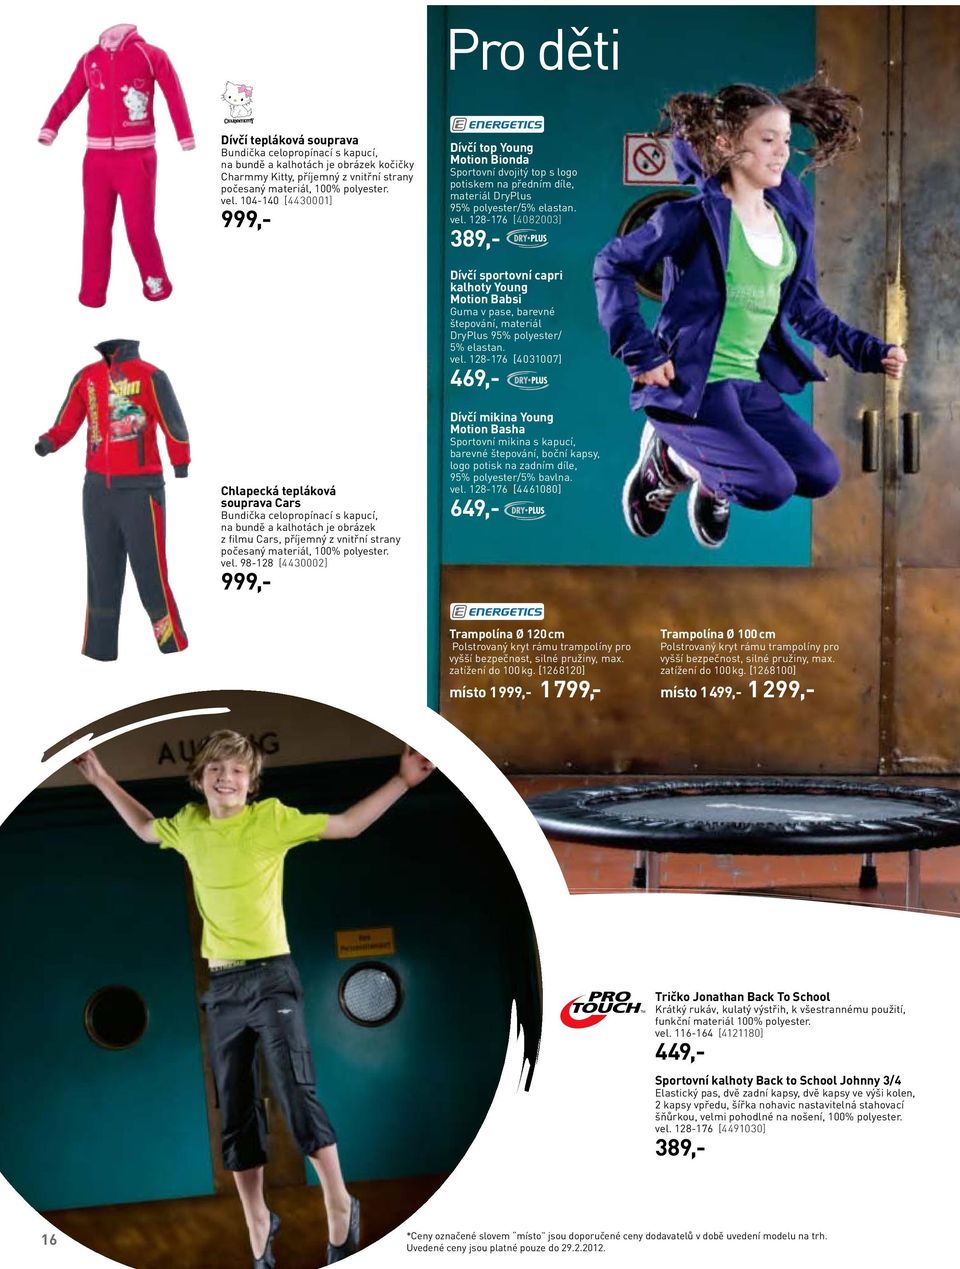 128-176 [4082003] 389,- Dívčí sportovní capri kalhoty Young Motion Babsi Guma v pase, barevné štepování, materiál DryPlus 95% polyester/ 5% elastan. vel.